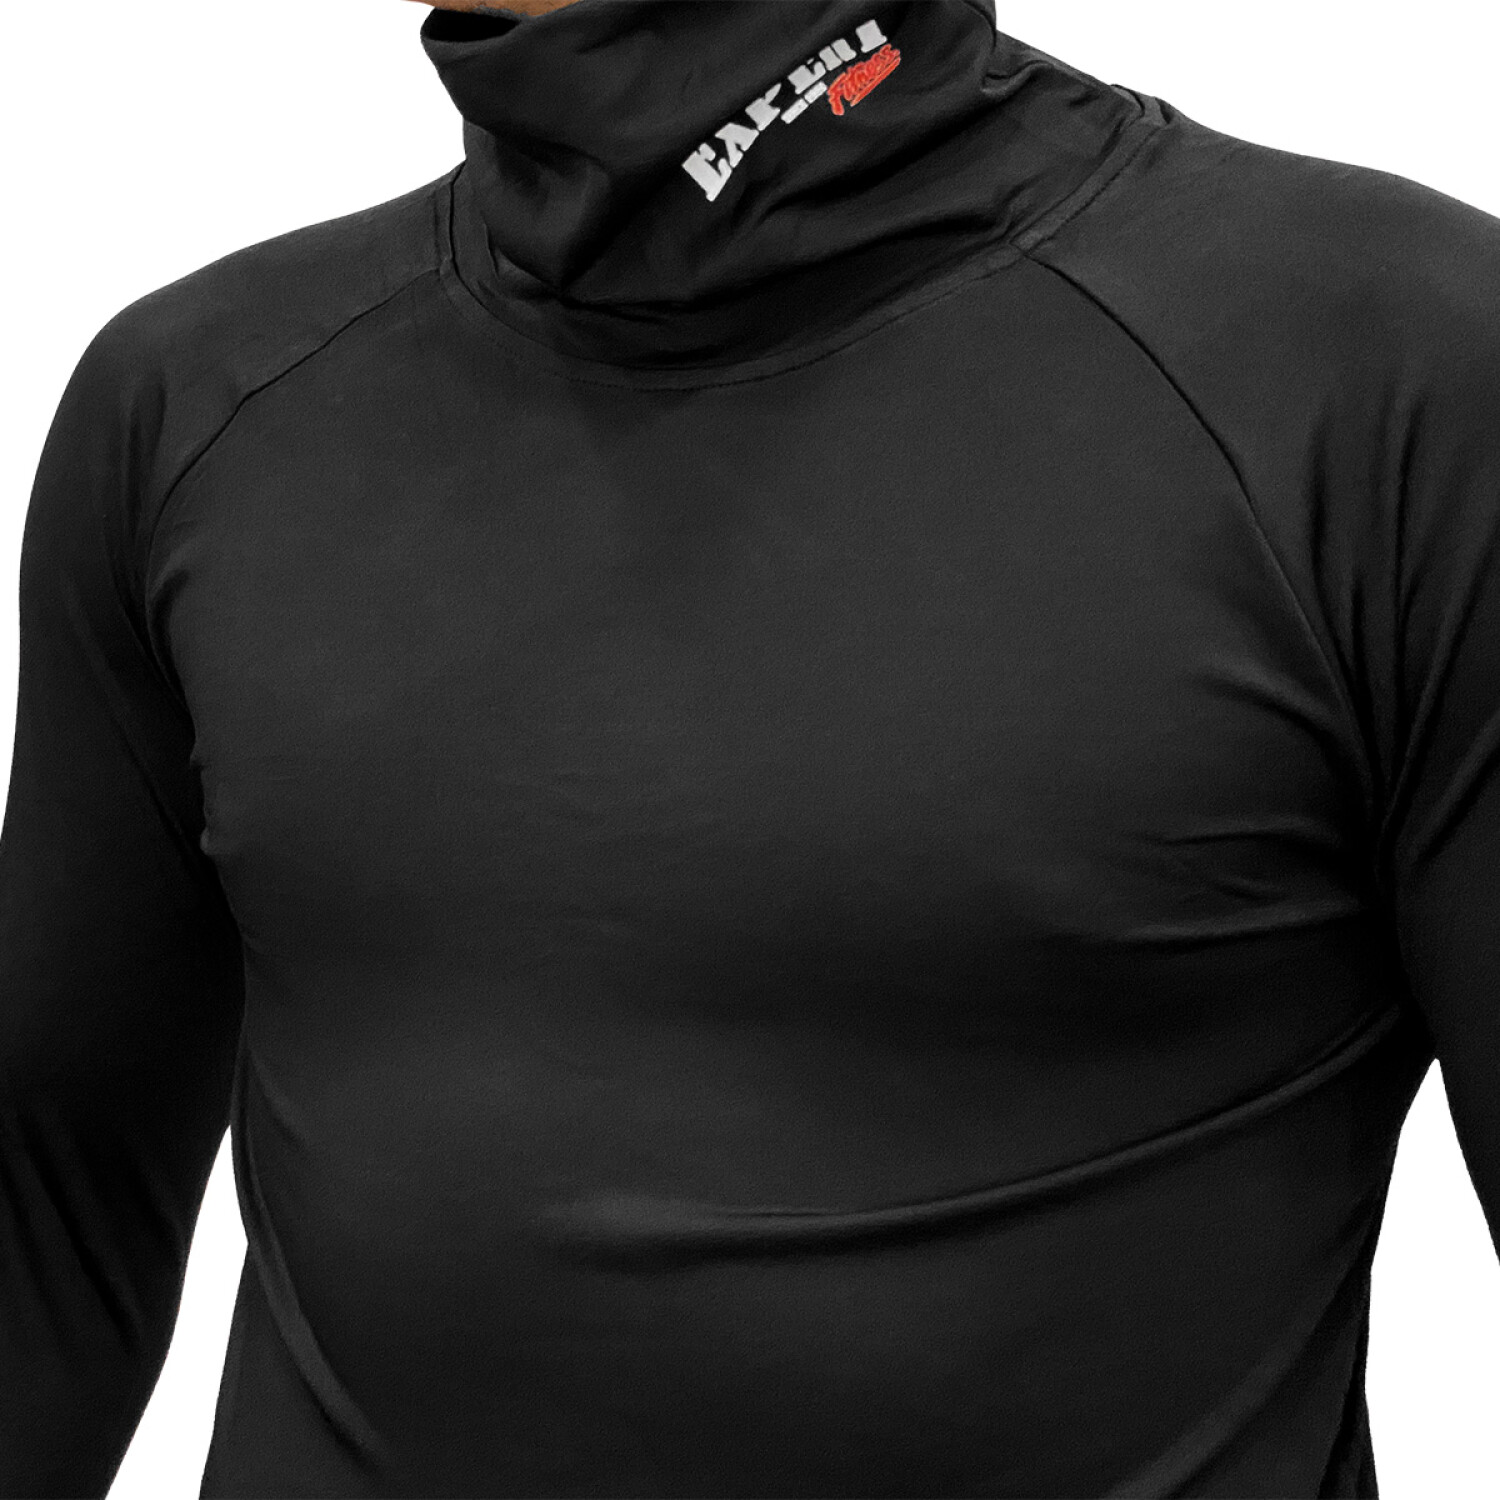 Pack de 5 camisetas cuello alto para hombre con efecto térmico